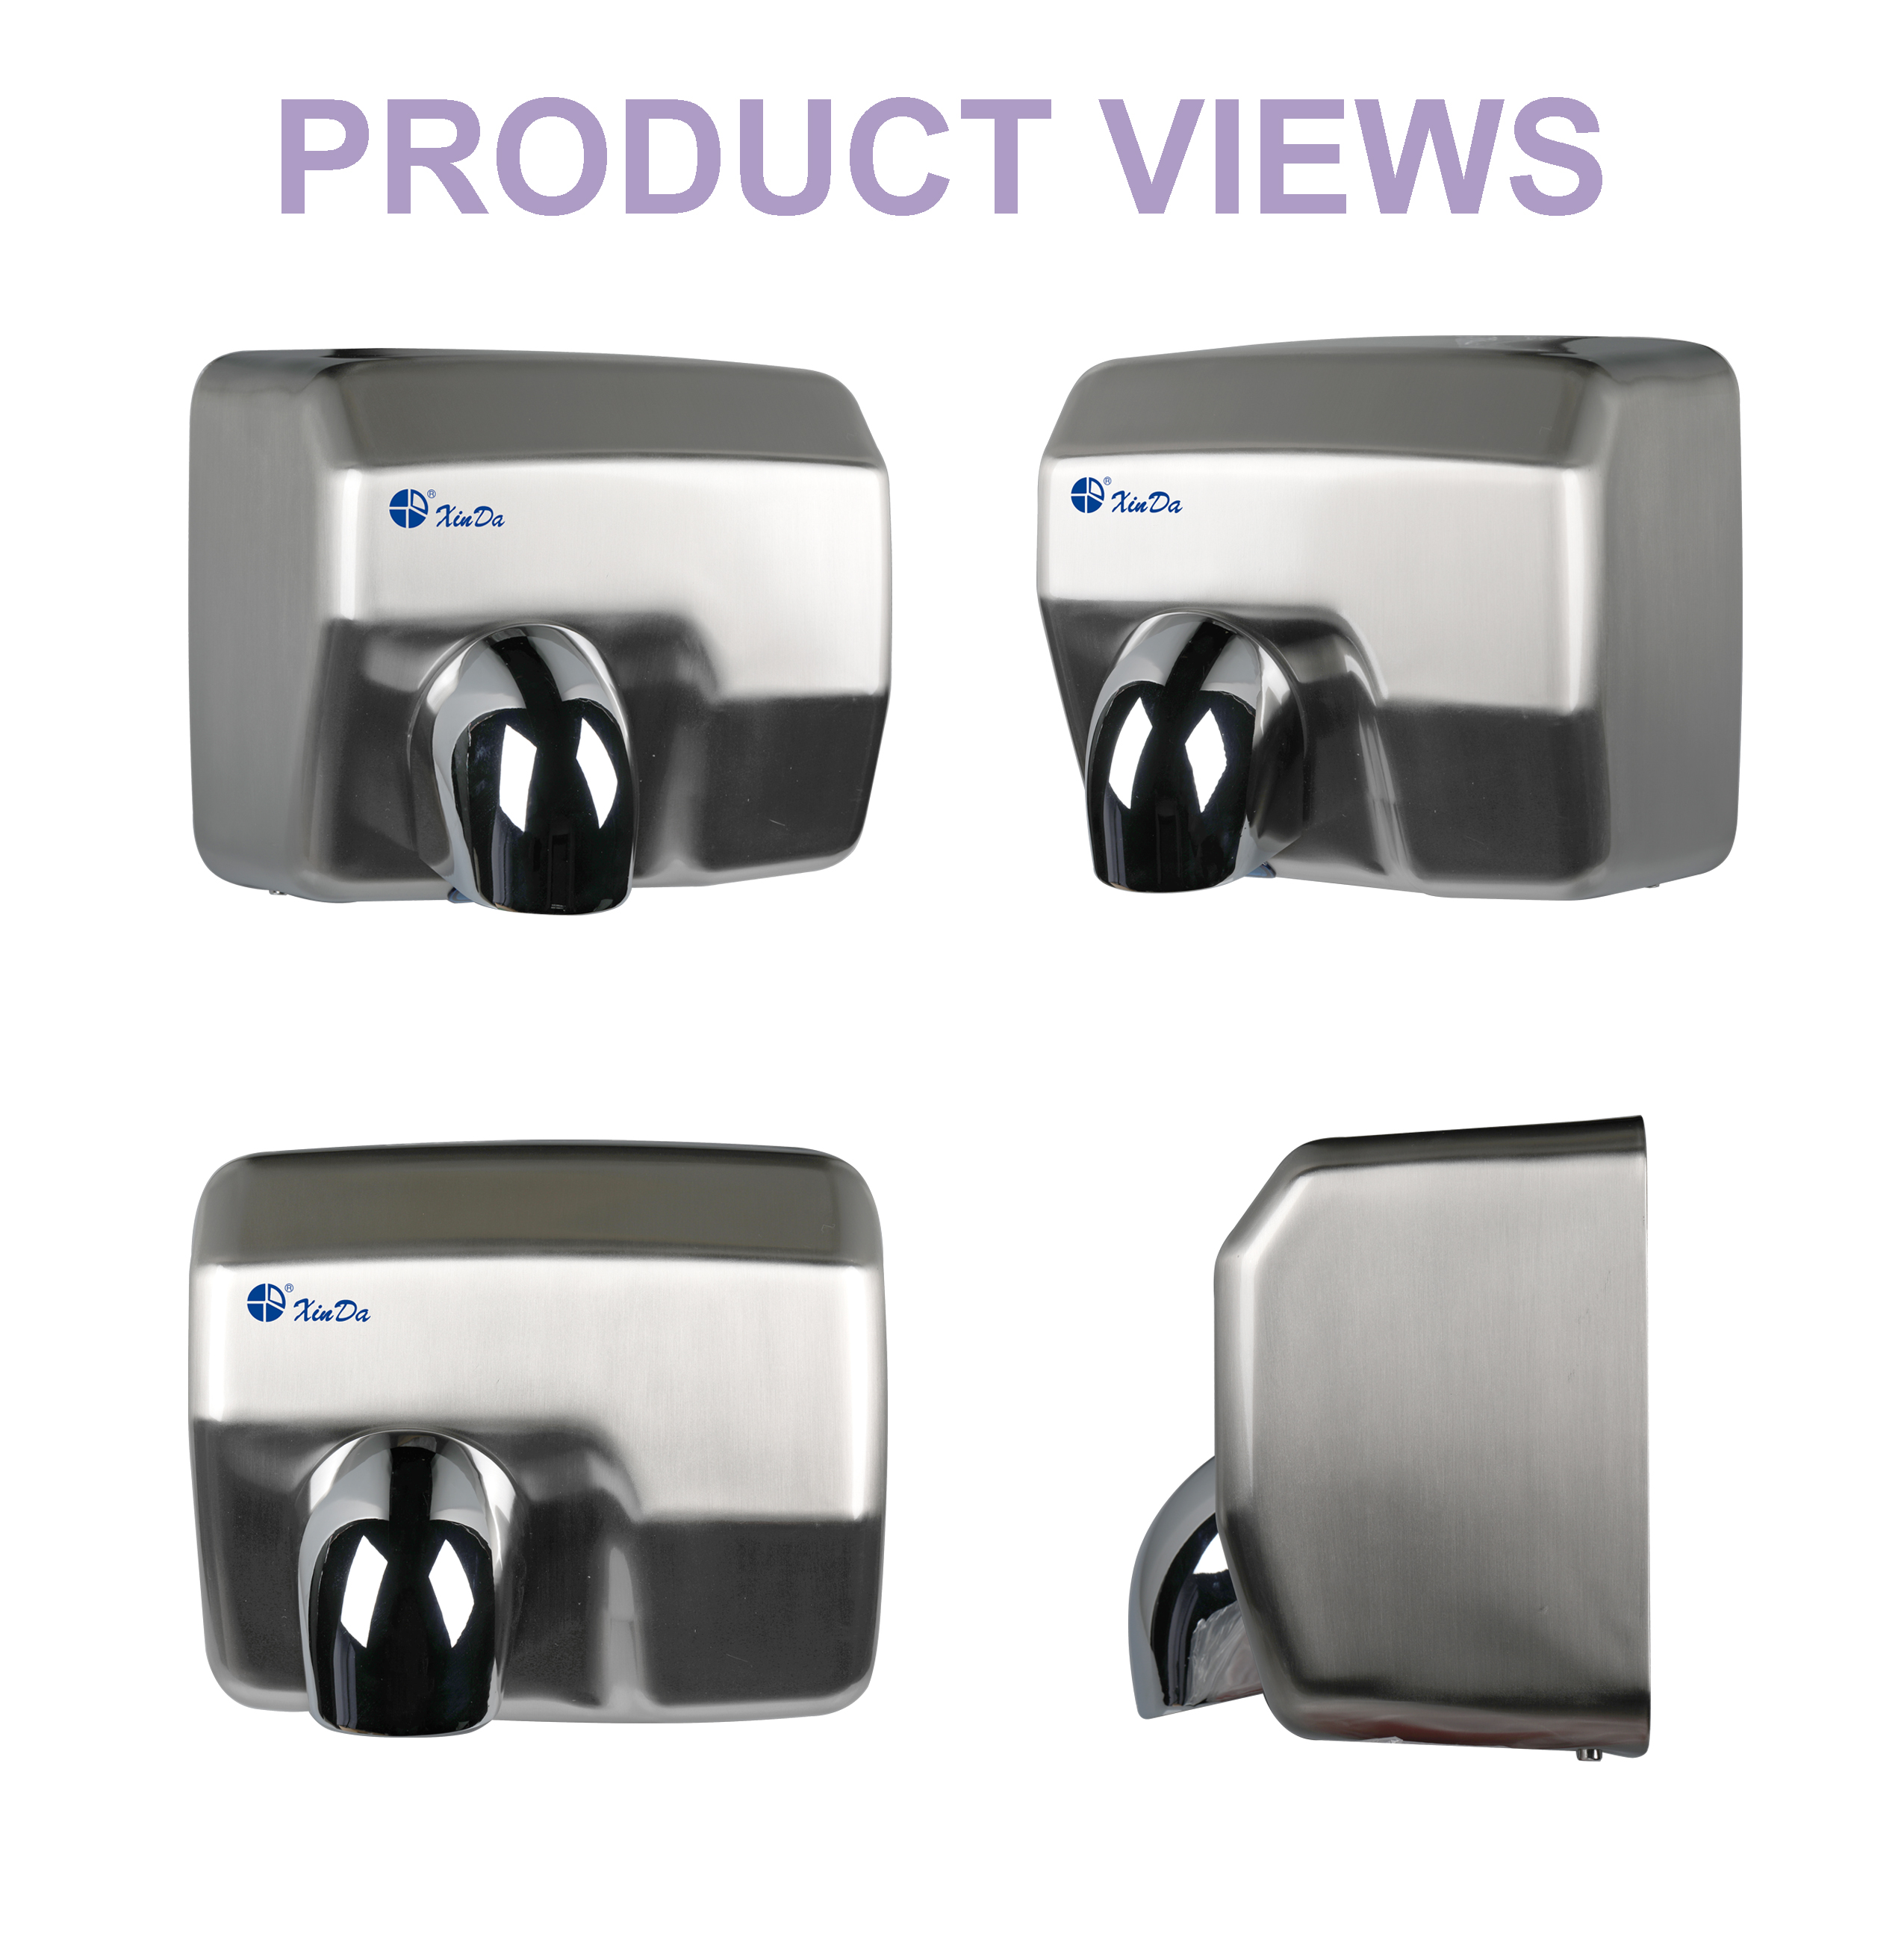 Máquina secadora de mãos XinDa Silver GSQ250 com sensor elétrico e secador de mãos de ozônio